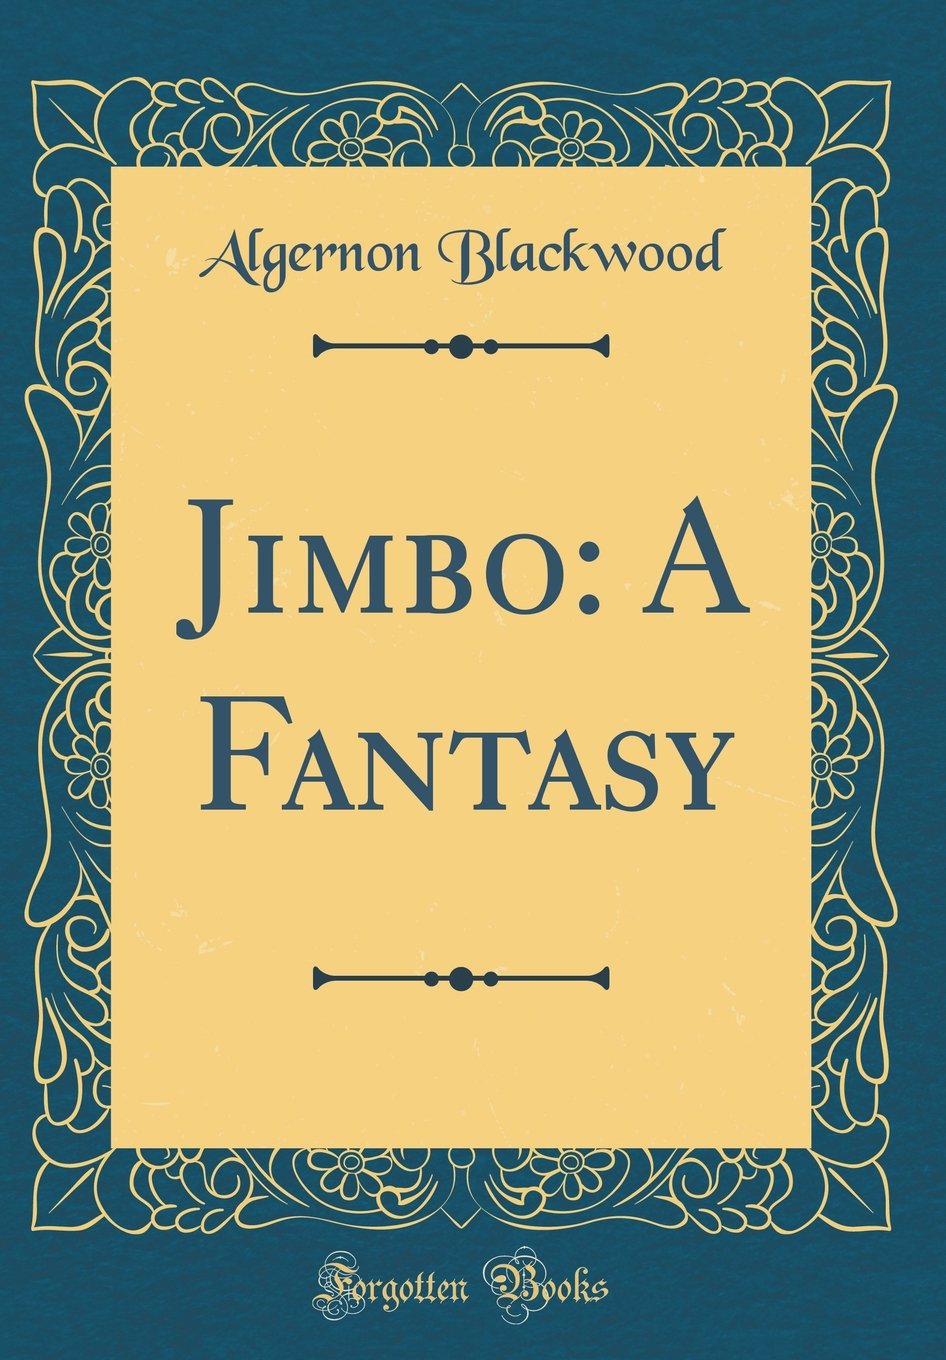 Jimbo: A Fantasy by Algernon Blackwood 